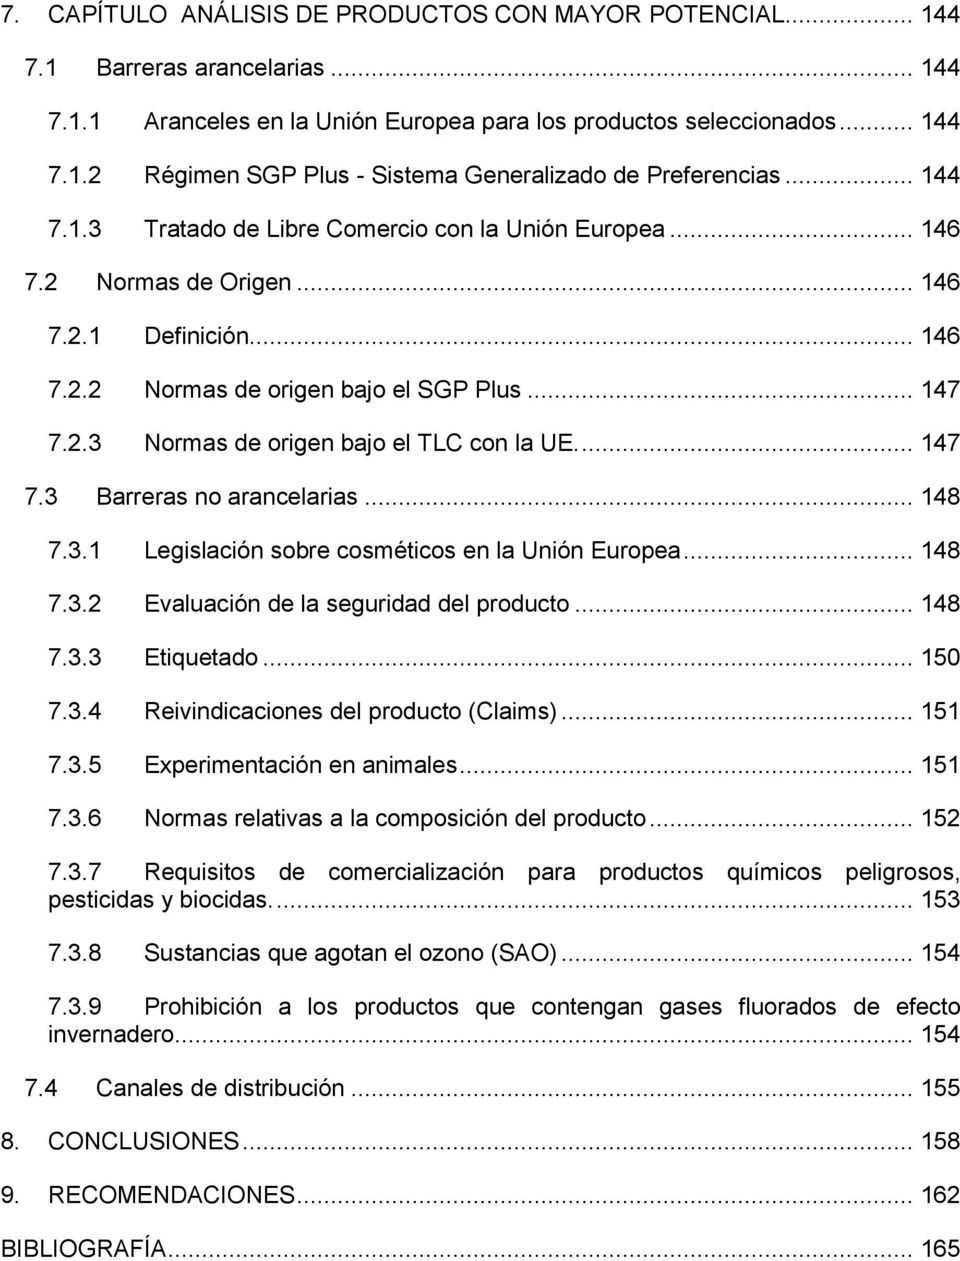 ... 147 7.3 Barreras no arancelarias... 148 7.3.1 Legislación sobre cosméticos en la Unión Europea... 148 7.3.2 Evaluación de la seguridad del producto... 148 7.3.3 Etiquetado... 150 7.3.4 Reivindicaciones del producto (Claims).